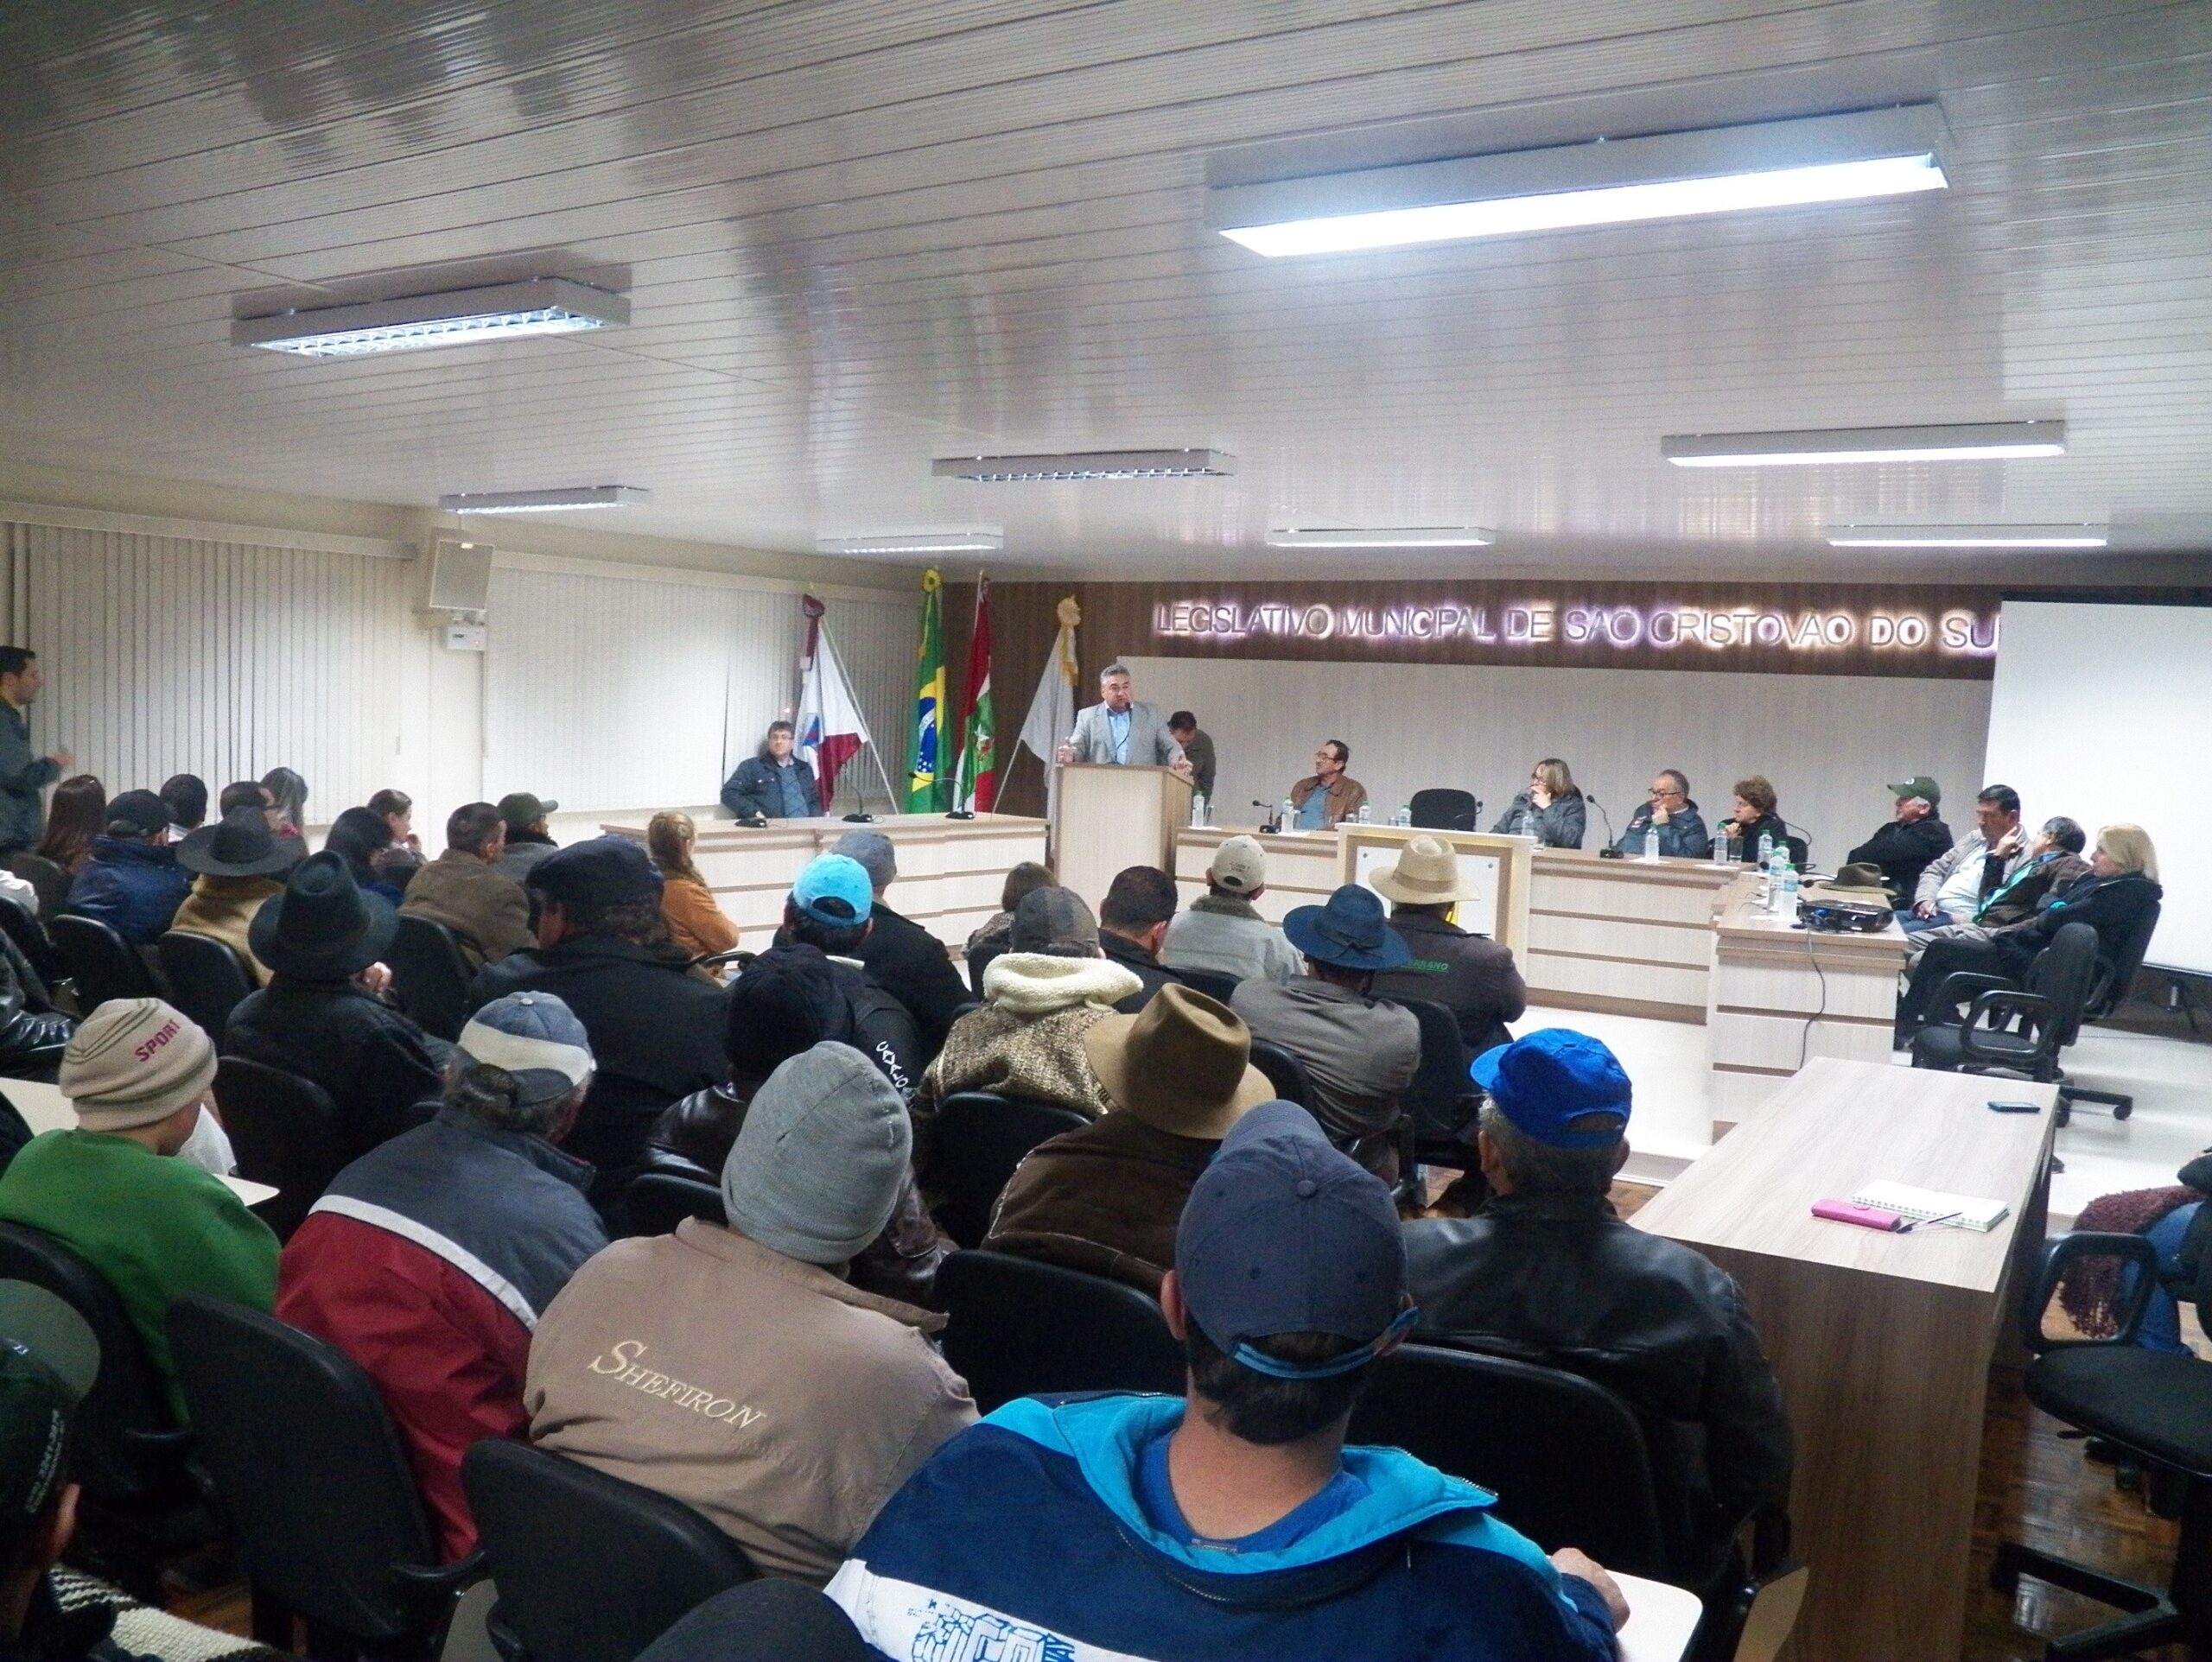 Audiência Pública contou com a presença de autoridades representantes do município, estado e governo federal